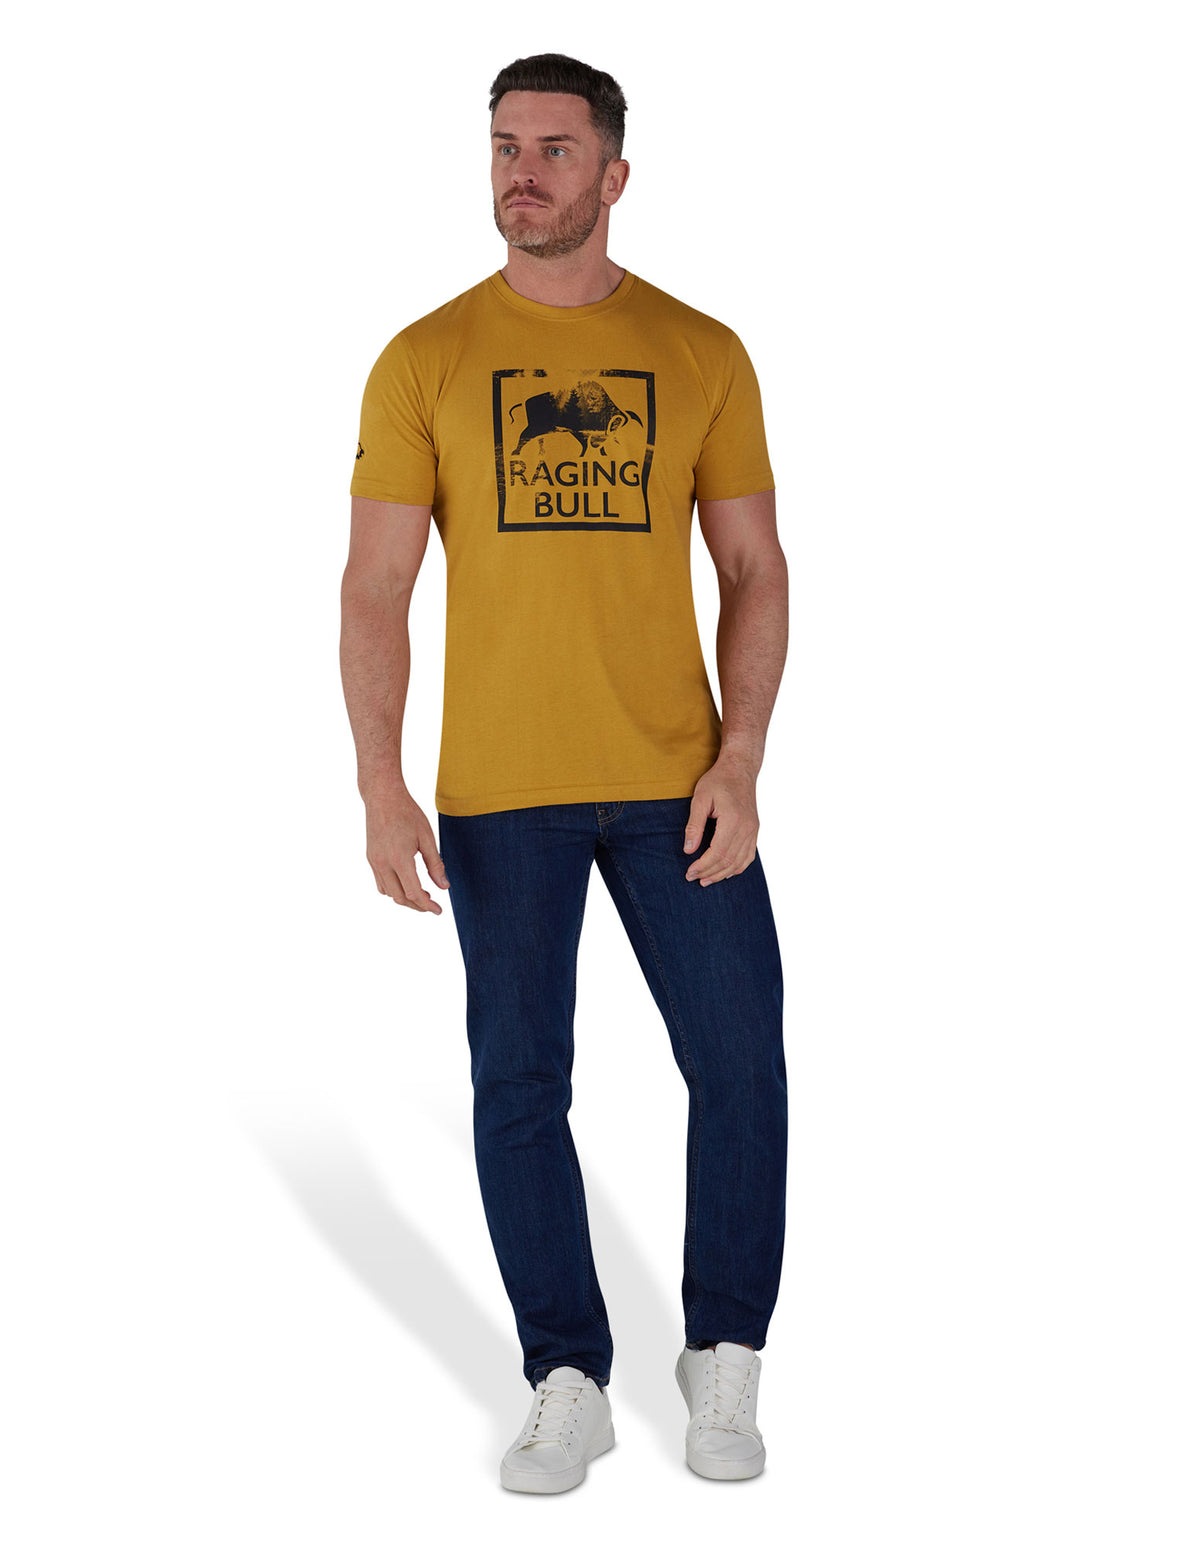 Wilderness Bull T-Shirt - Yellow